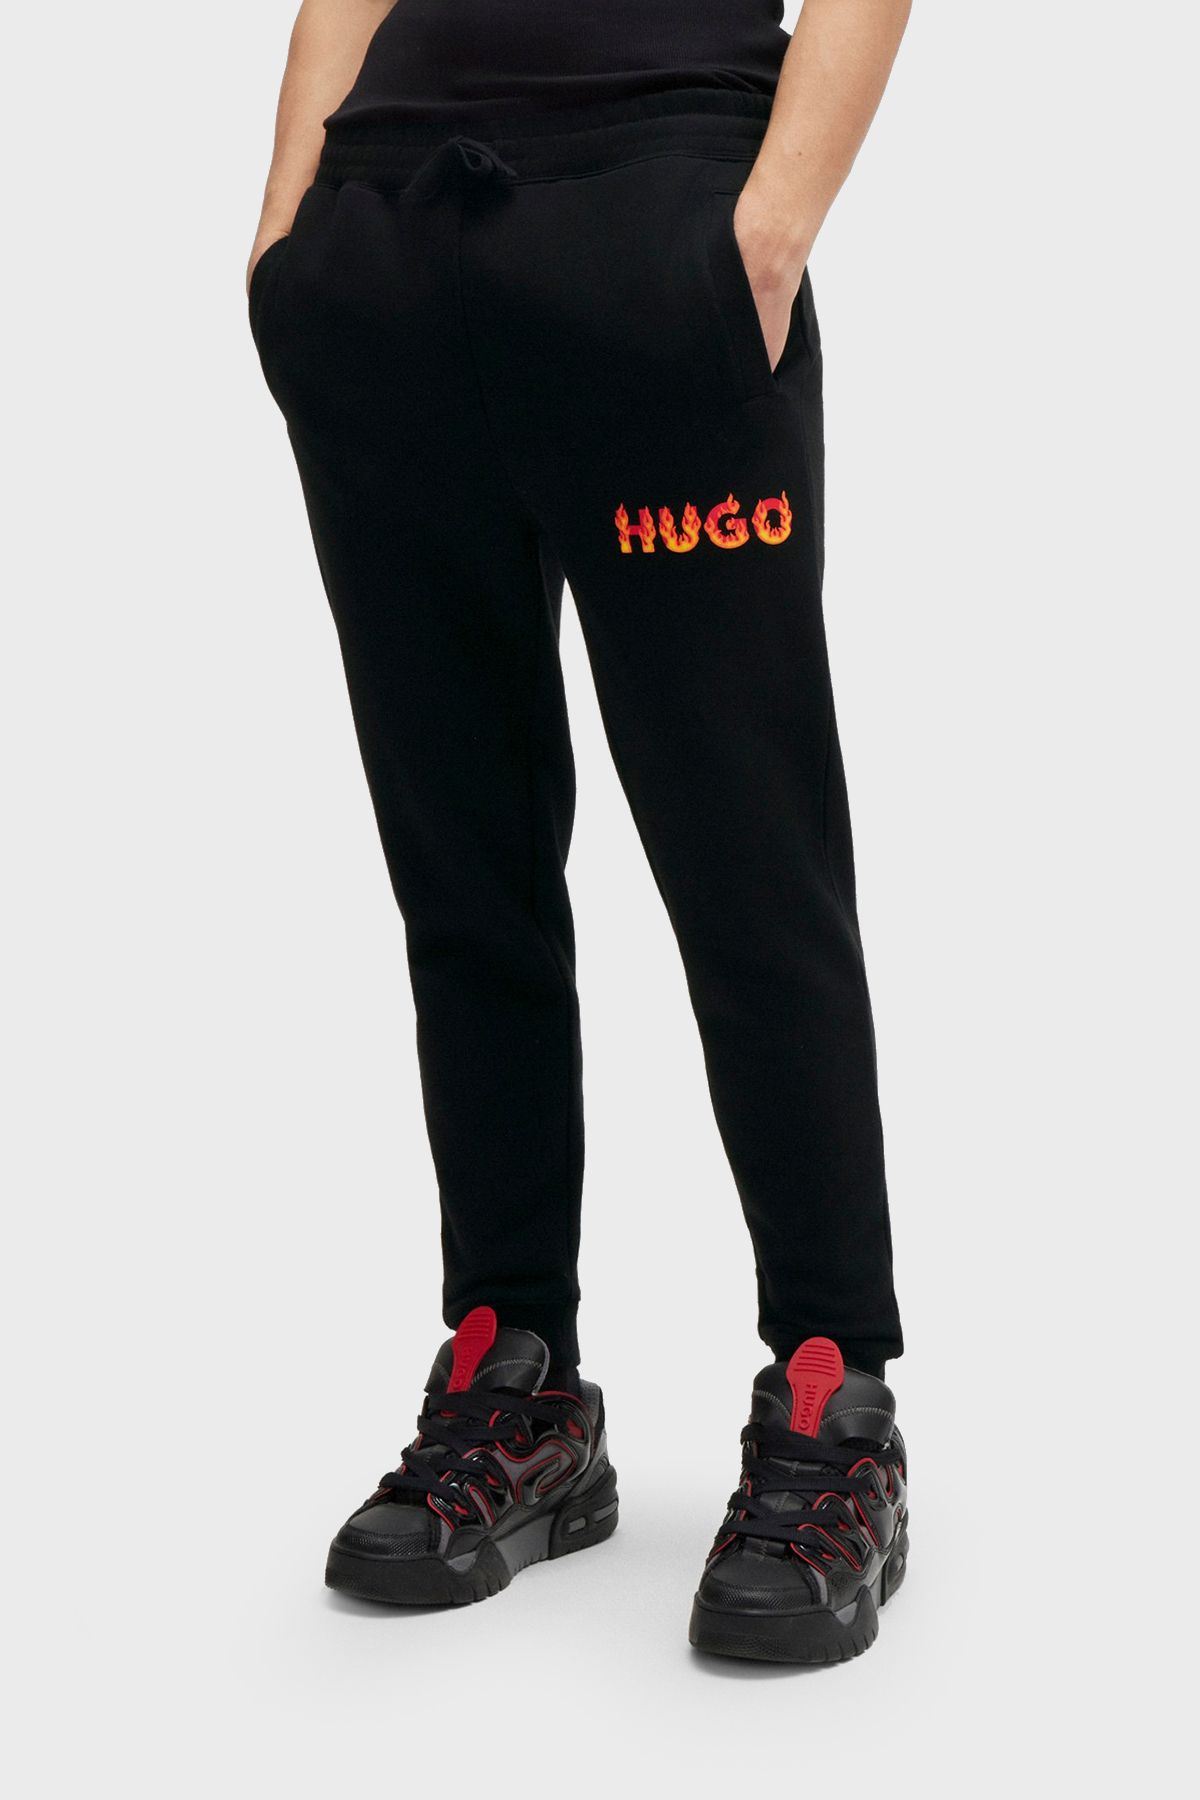 HUGO Logolu Pamuklu Belden Bağlamalı Regular Fit Pantolon Erkek PANTOLON 50504788 001